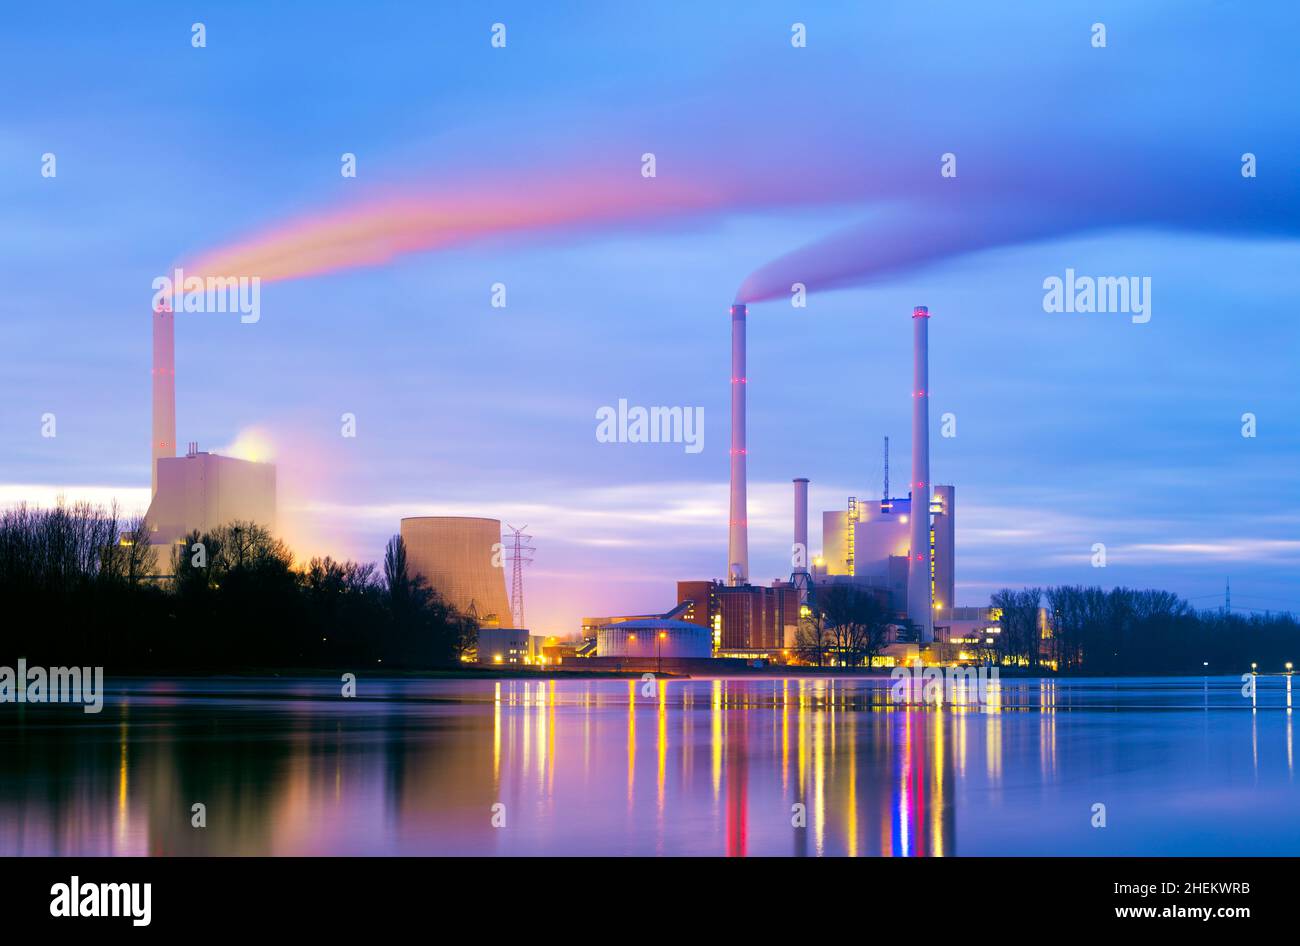 Illuminated coal power plant in Germany Stock Photo